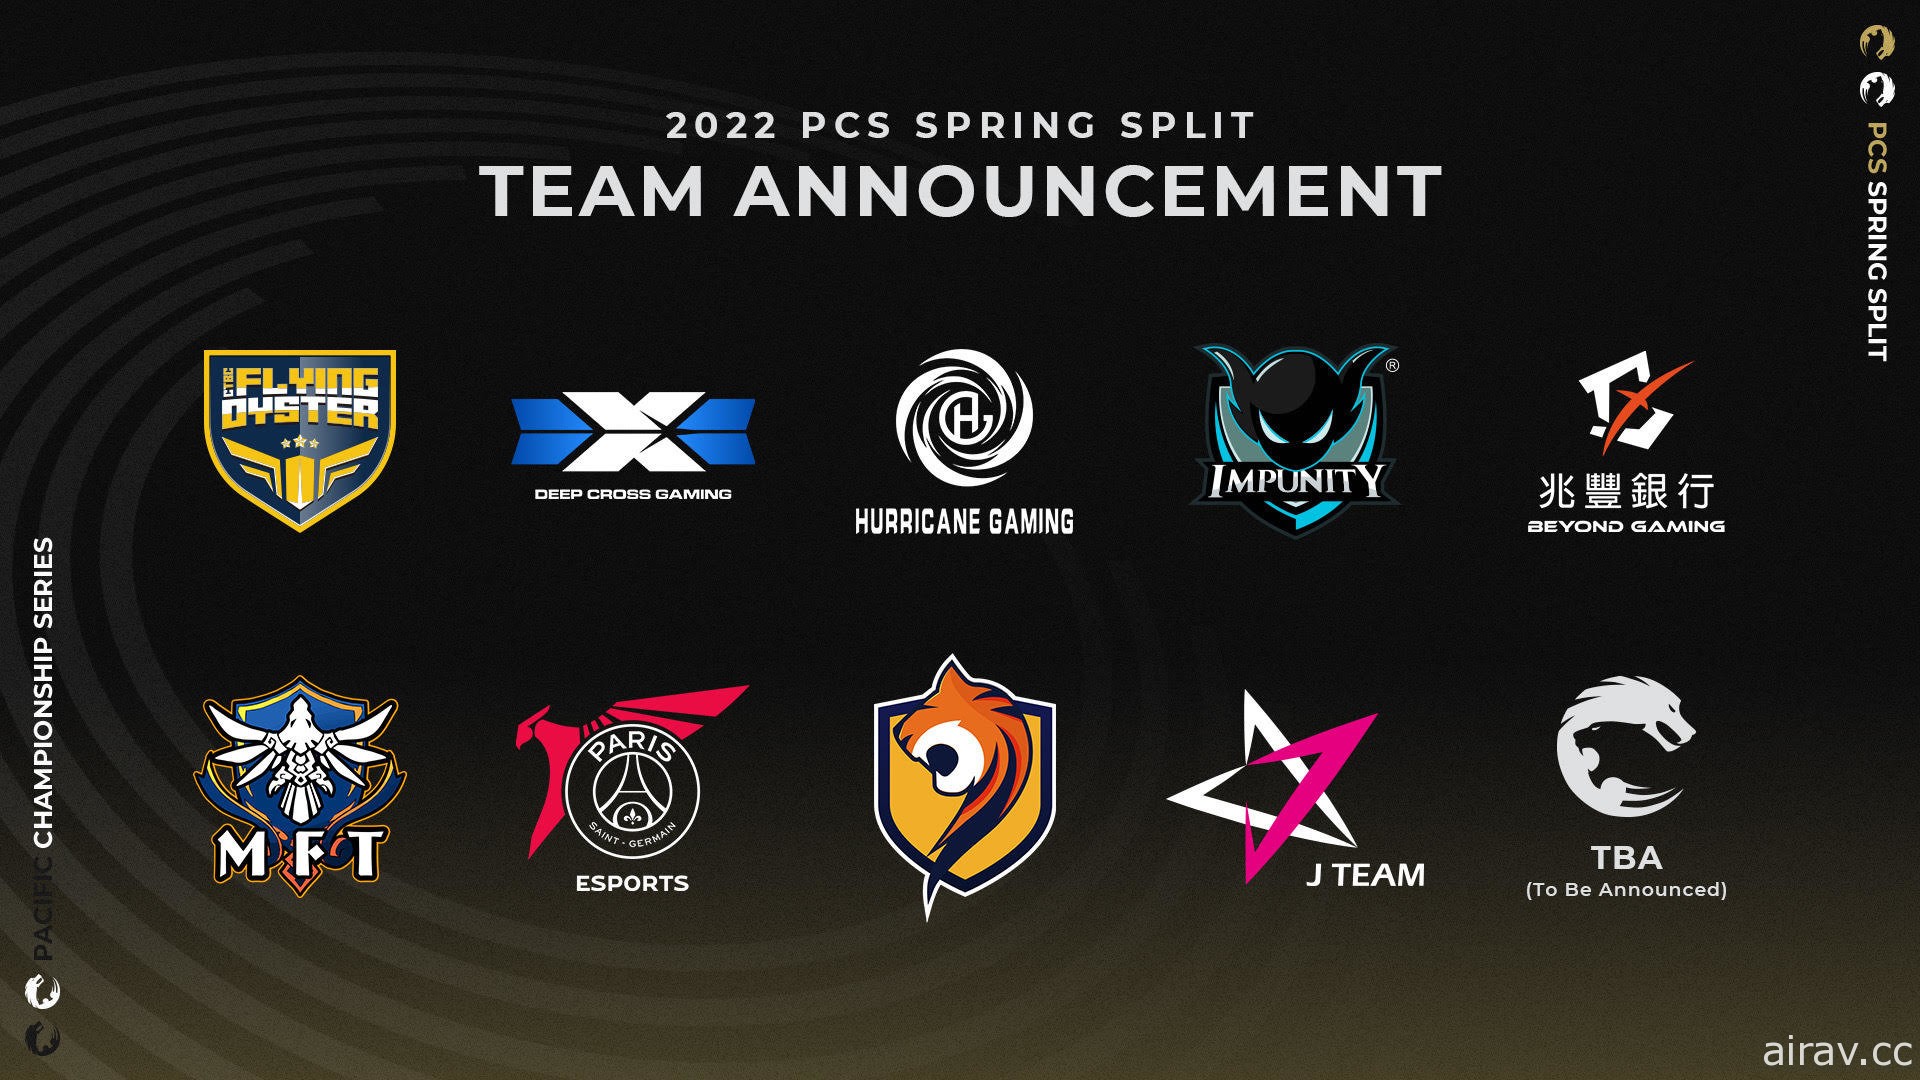 2022《英雄联盟》PCS 联赛 2 月 11 日开打 10 支队伍中有 6 支是新队伍